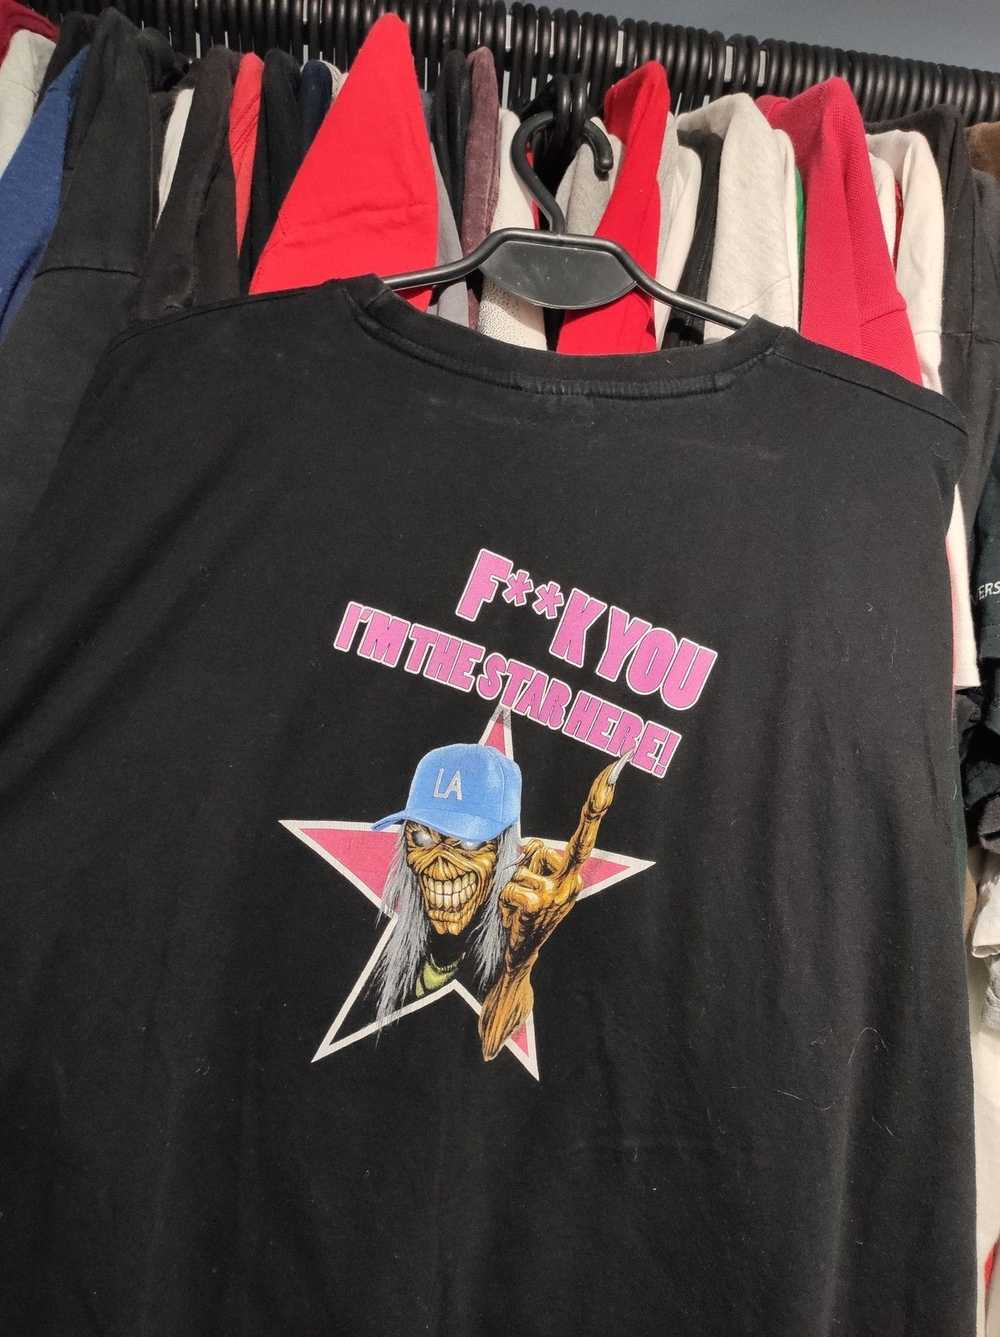 Band Tees × Iron Maiden 00s iron maiden tshirt - image 2